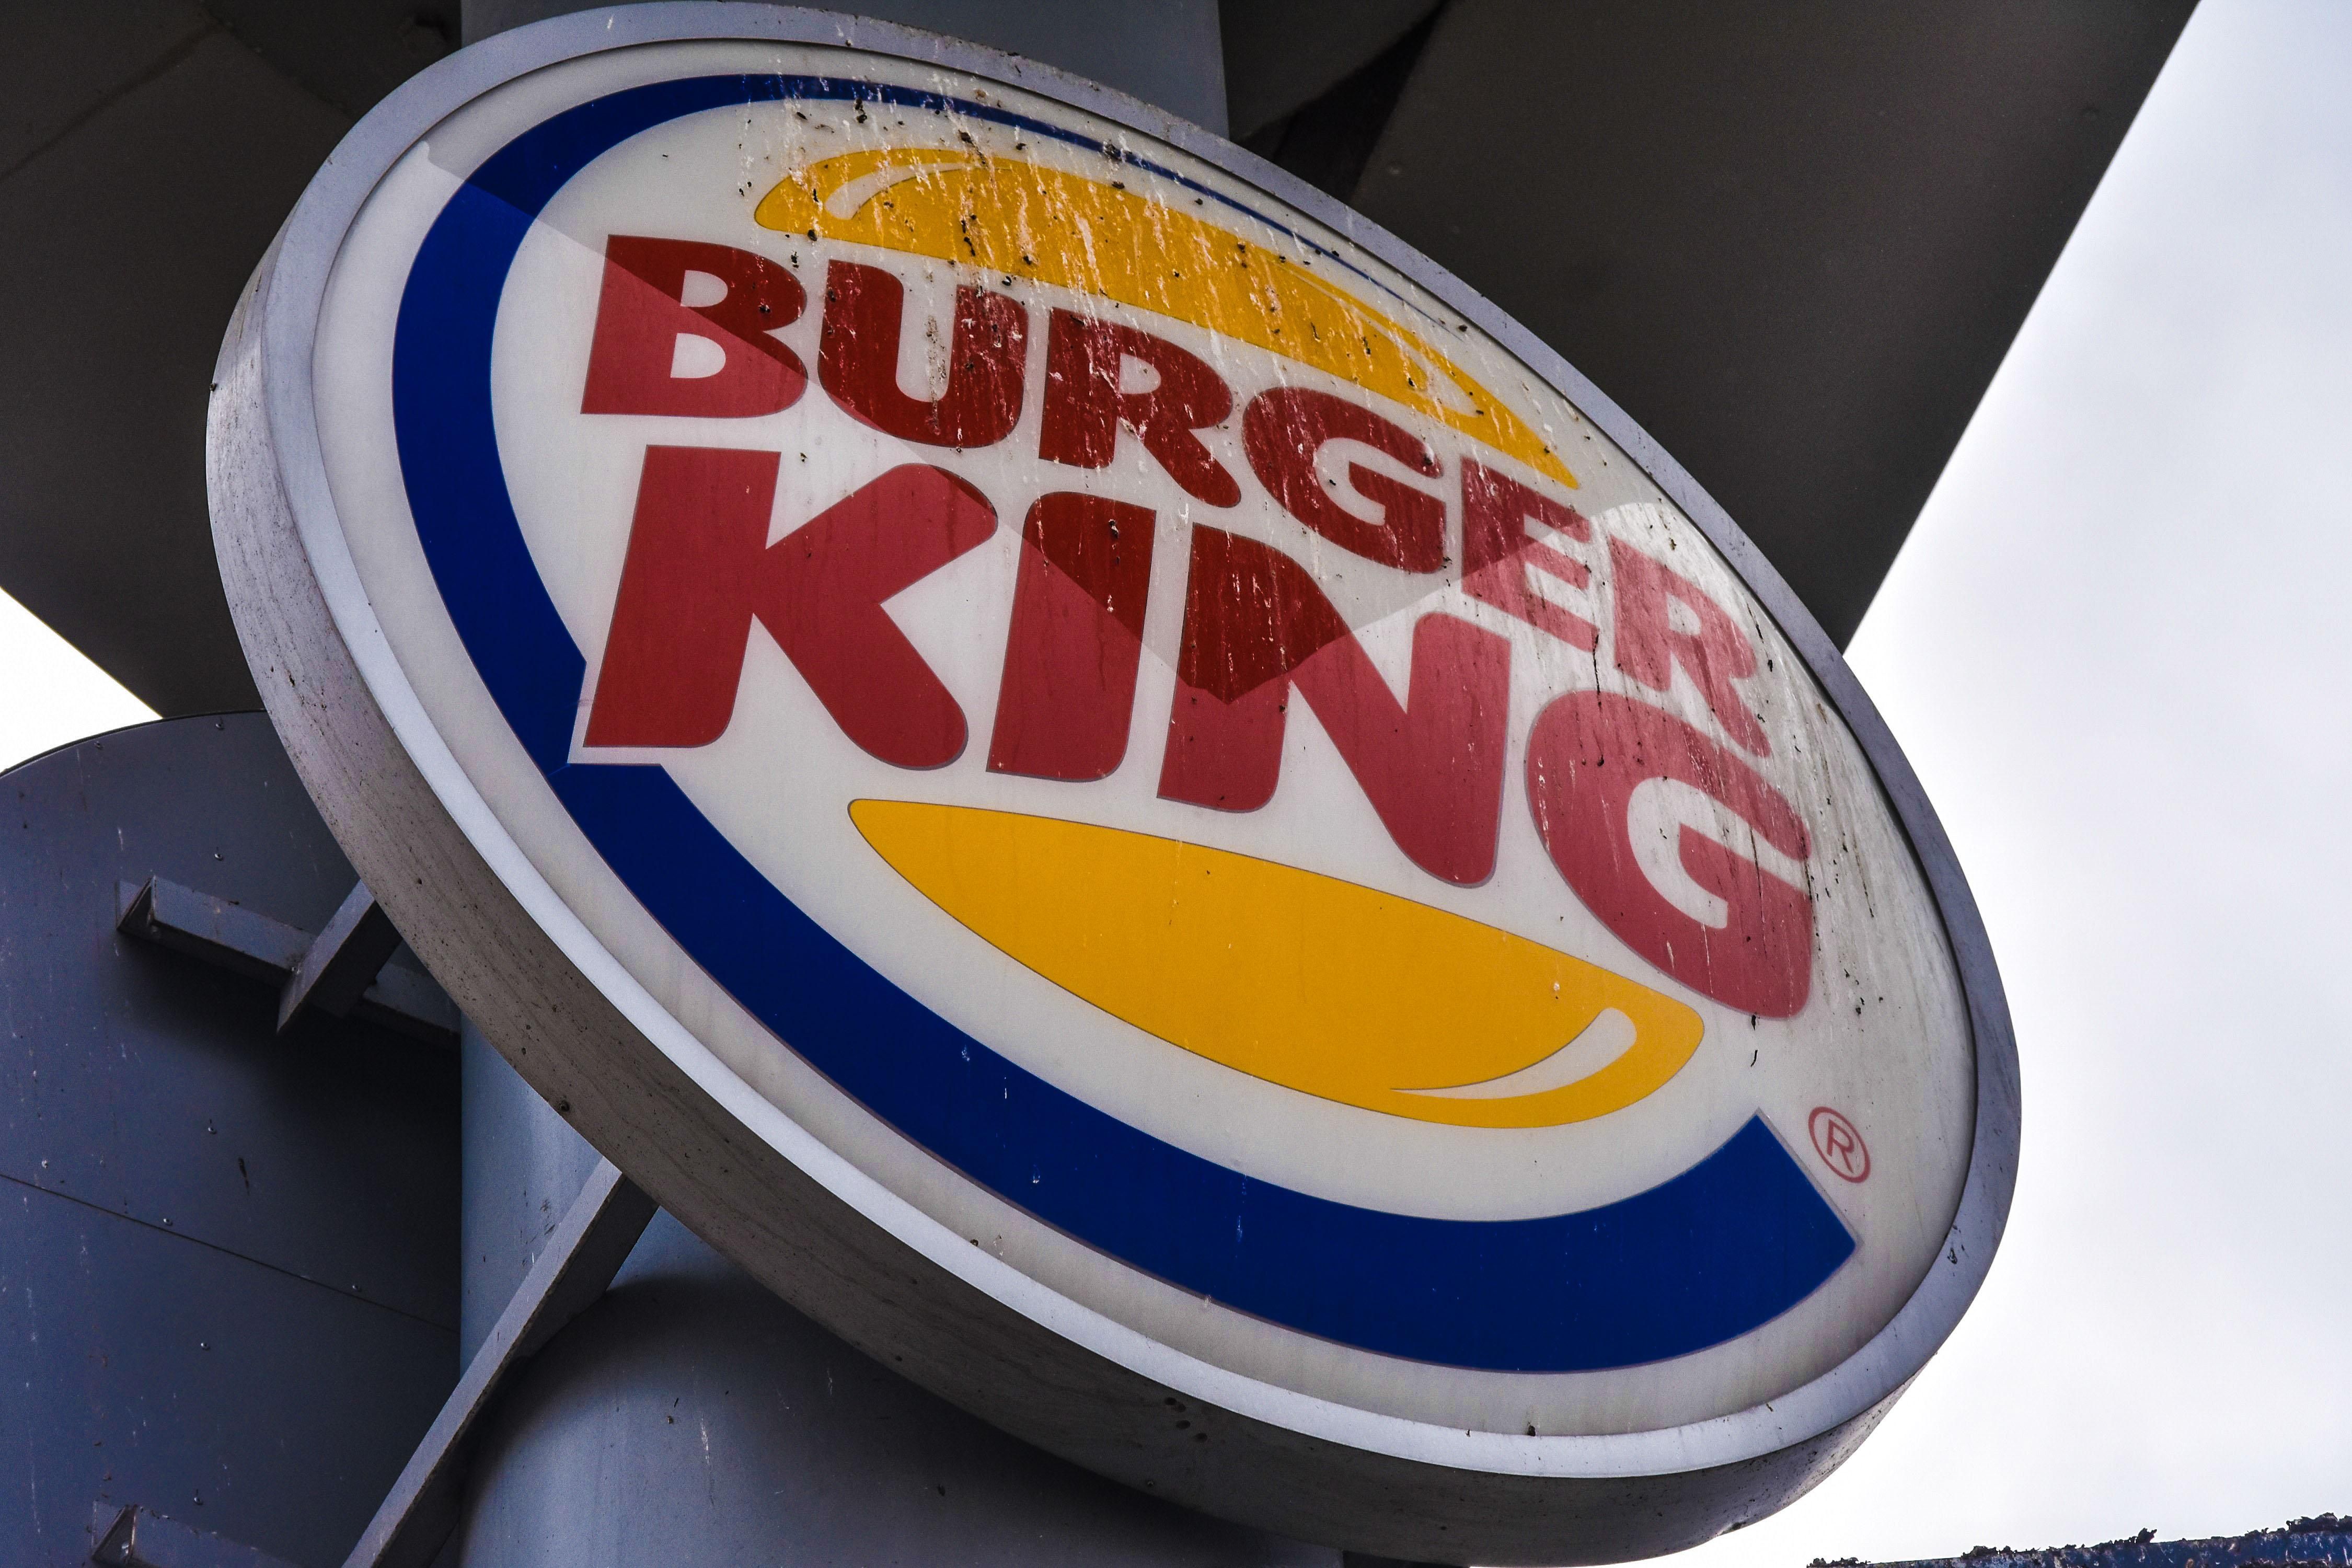 Место женщины - на кухне: Бургер Кинг попал в сексистский скандал